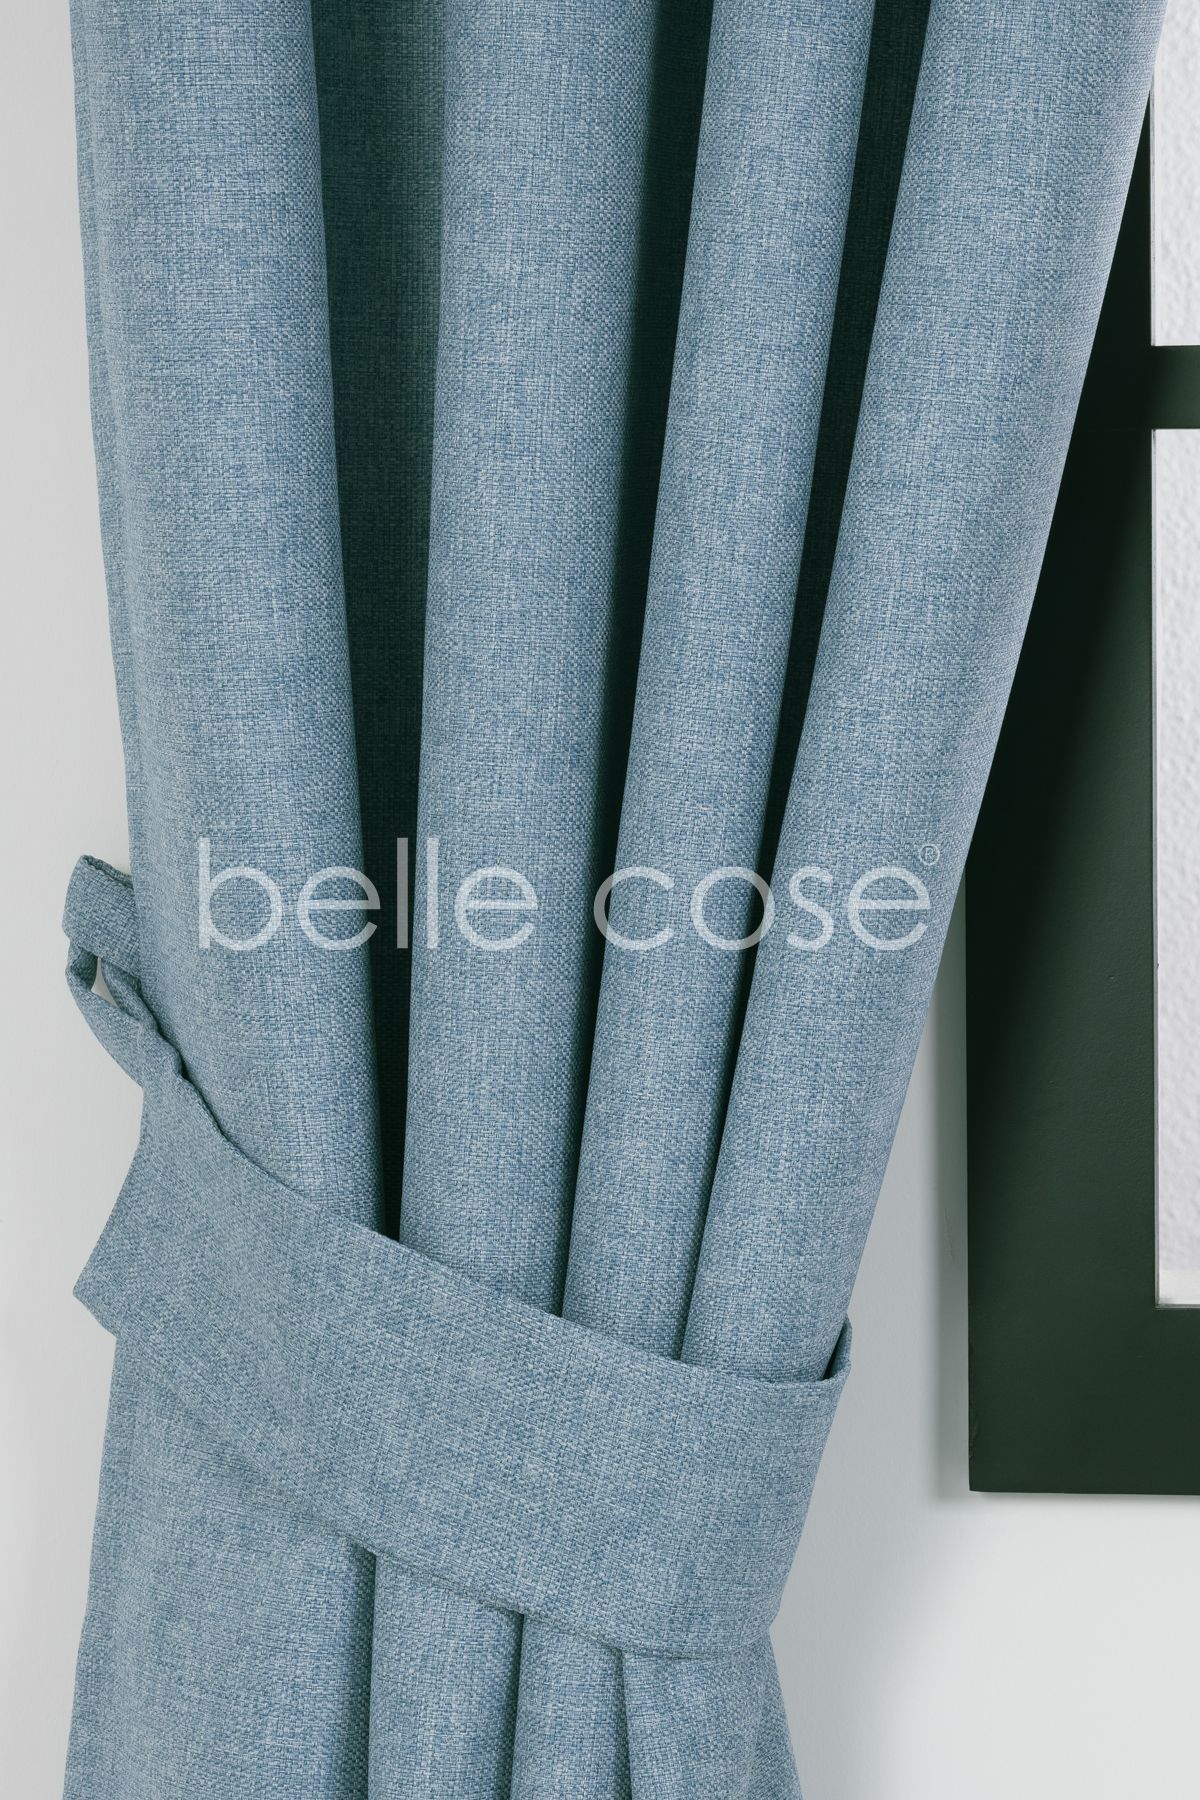 Belle Cose Hasır Keten Görünümlü Yarı Karartma Blackout Fon Perde Pilesiz Dikim Mavi